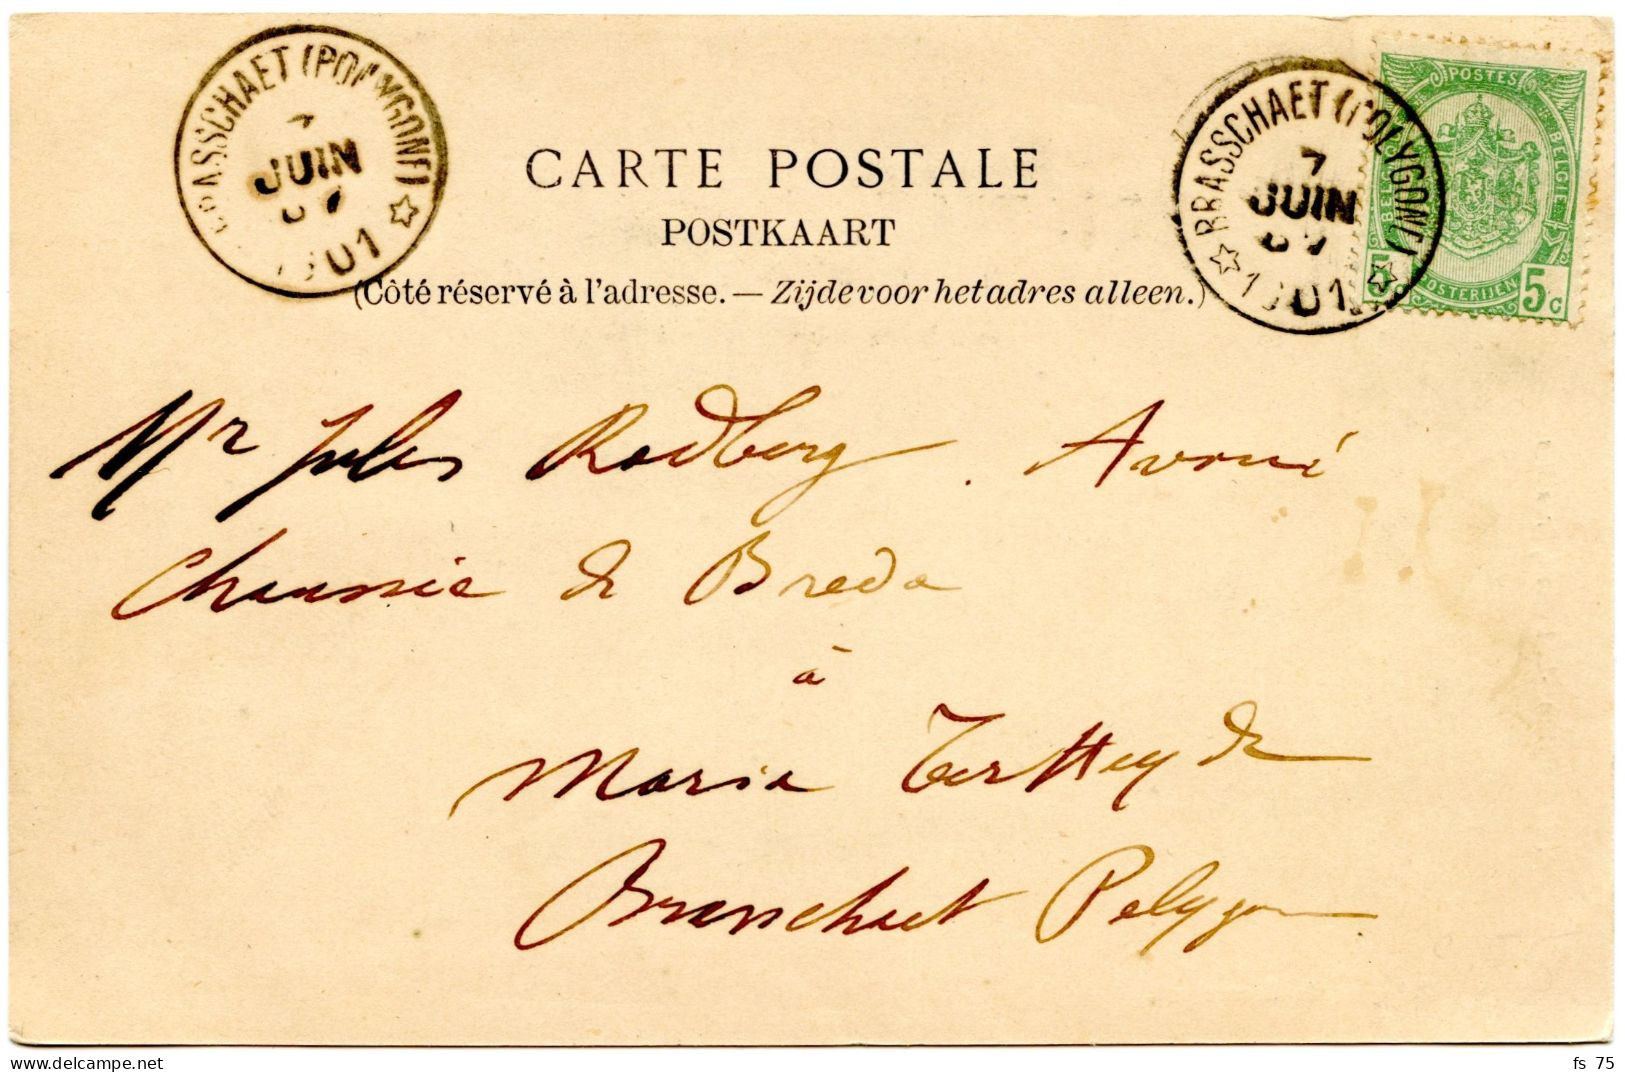 BELGIQUE - COB 56 SIMPLE CERCLE RELAIS A ETOILES BRASSCHAET (POLYGONE) SUR CARTE POSTALE, 1901 - Sternenstempel